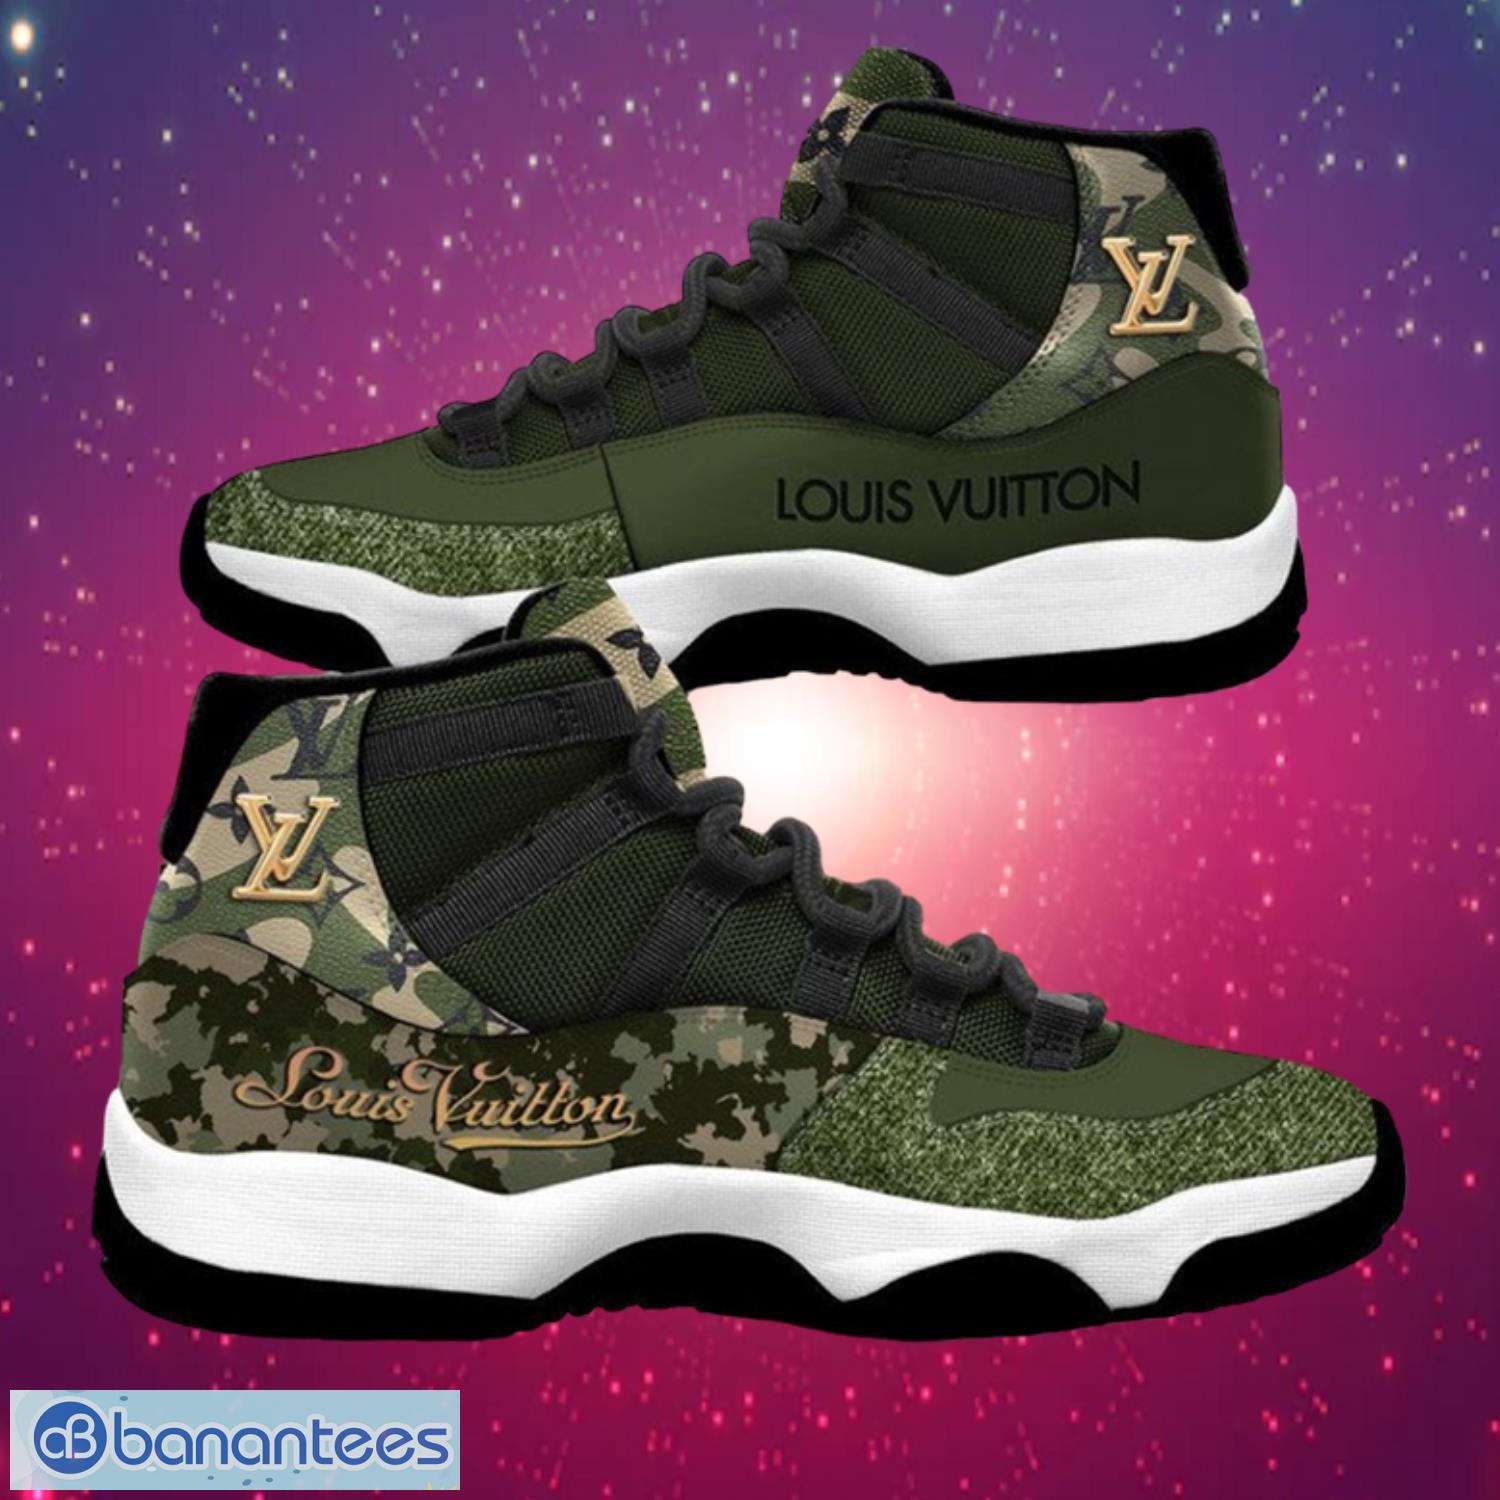 NEW FASHION] Louis Vuitton Green Camo Air Jordan 11 Sneakers Shoes